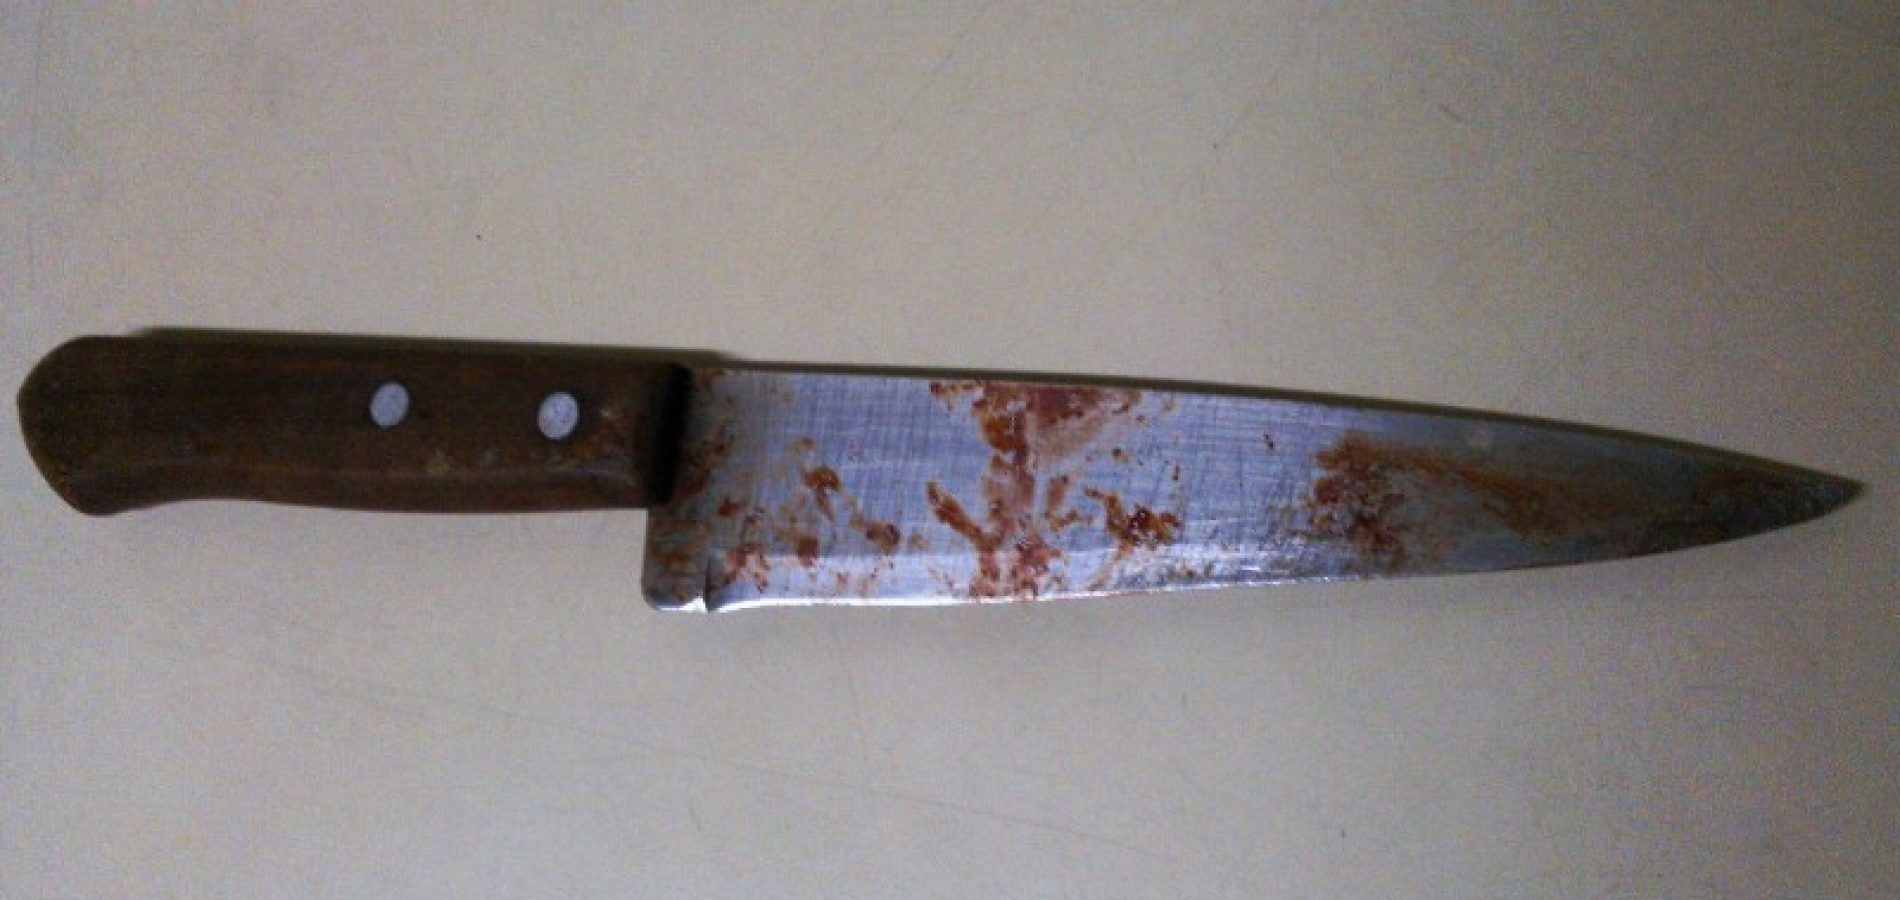 Pai mata filho de 6 anos a facadas dentro de casa e choca a população de Ipubi-PE